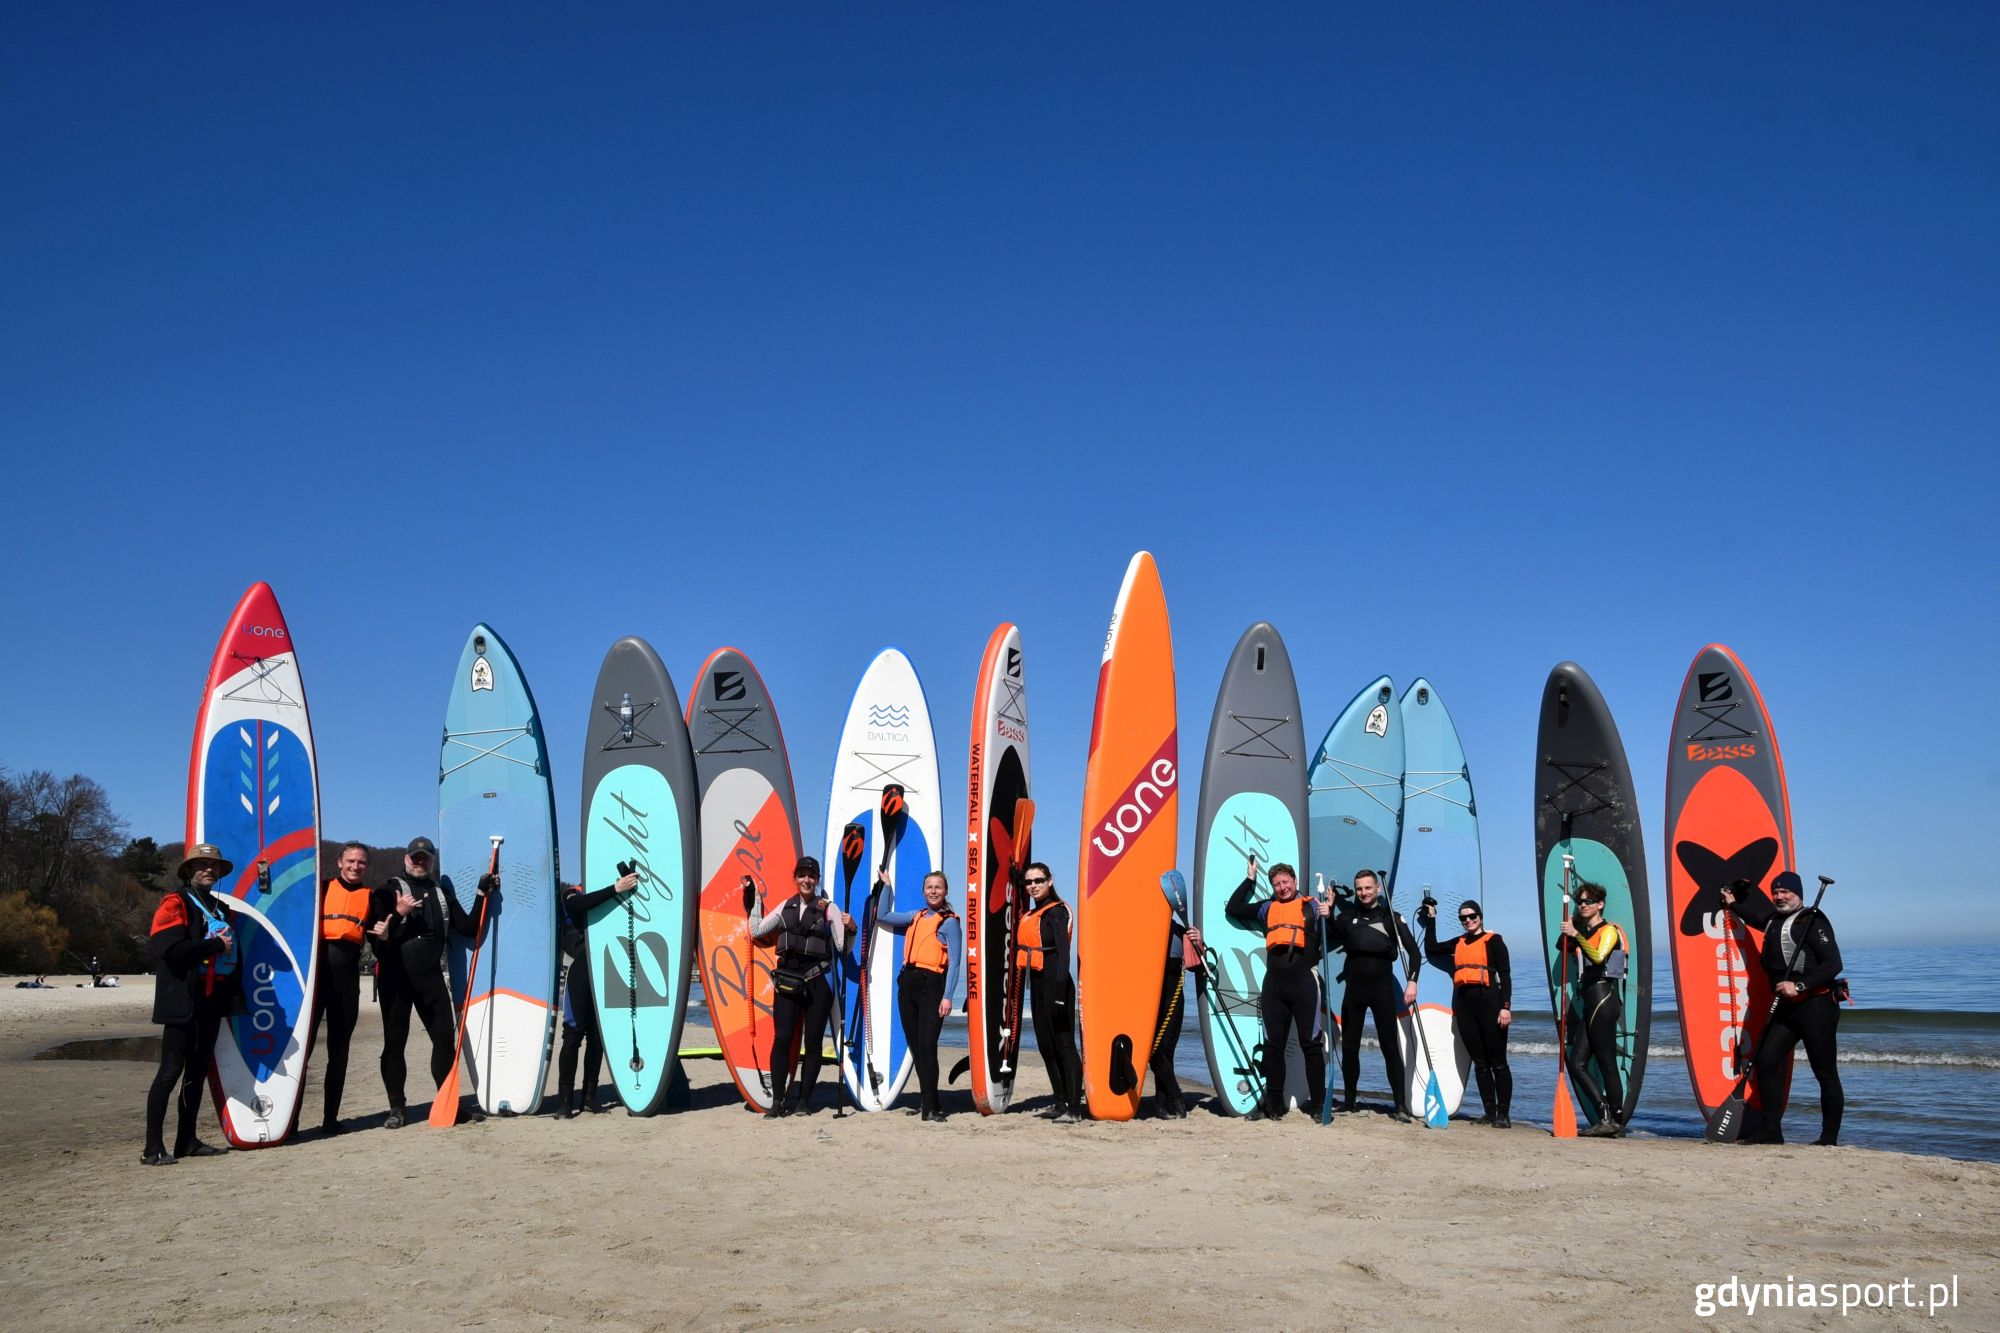 uczestnicy szkolenia stojący z deskami na plaży - zdjęcie grupowe